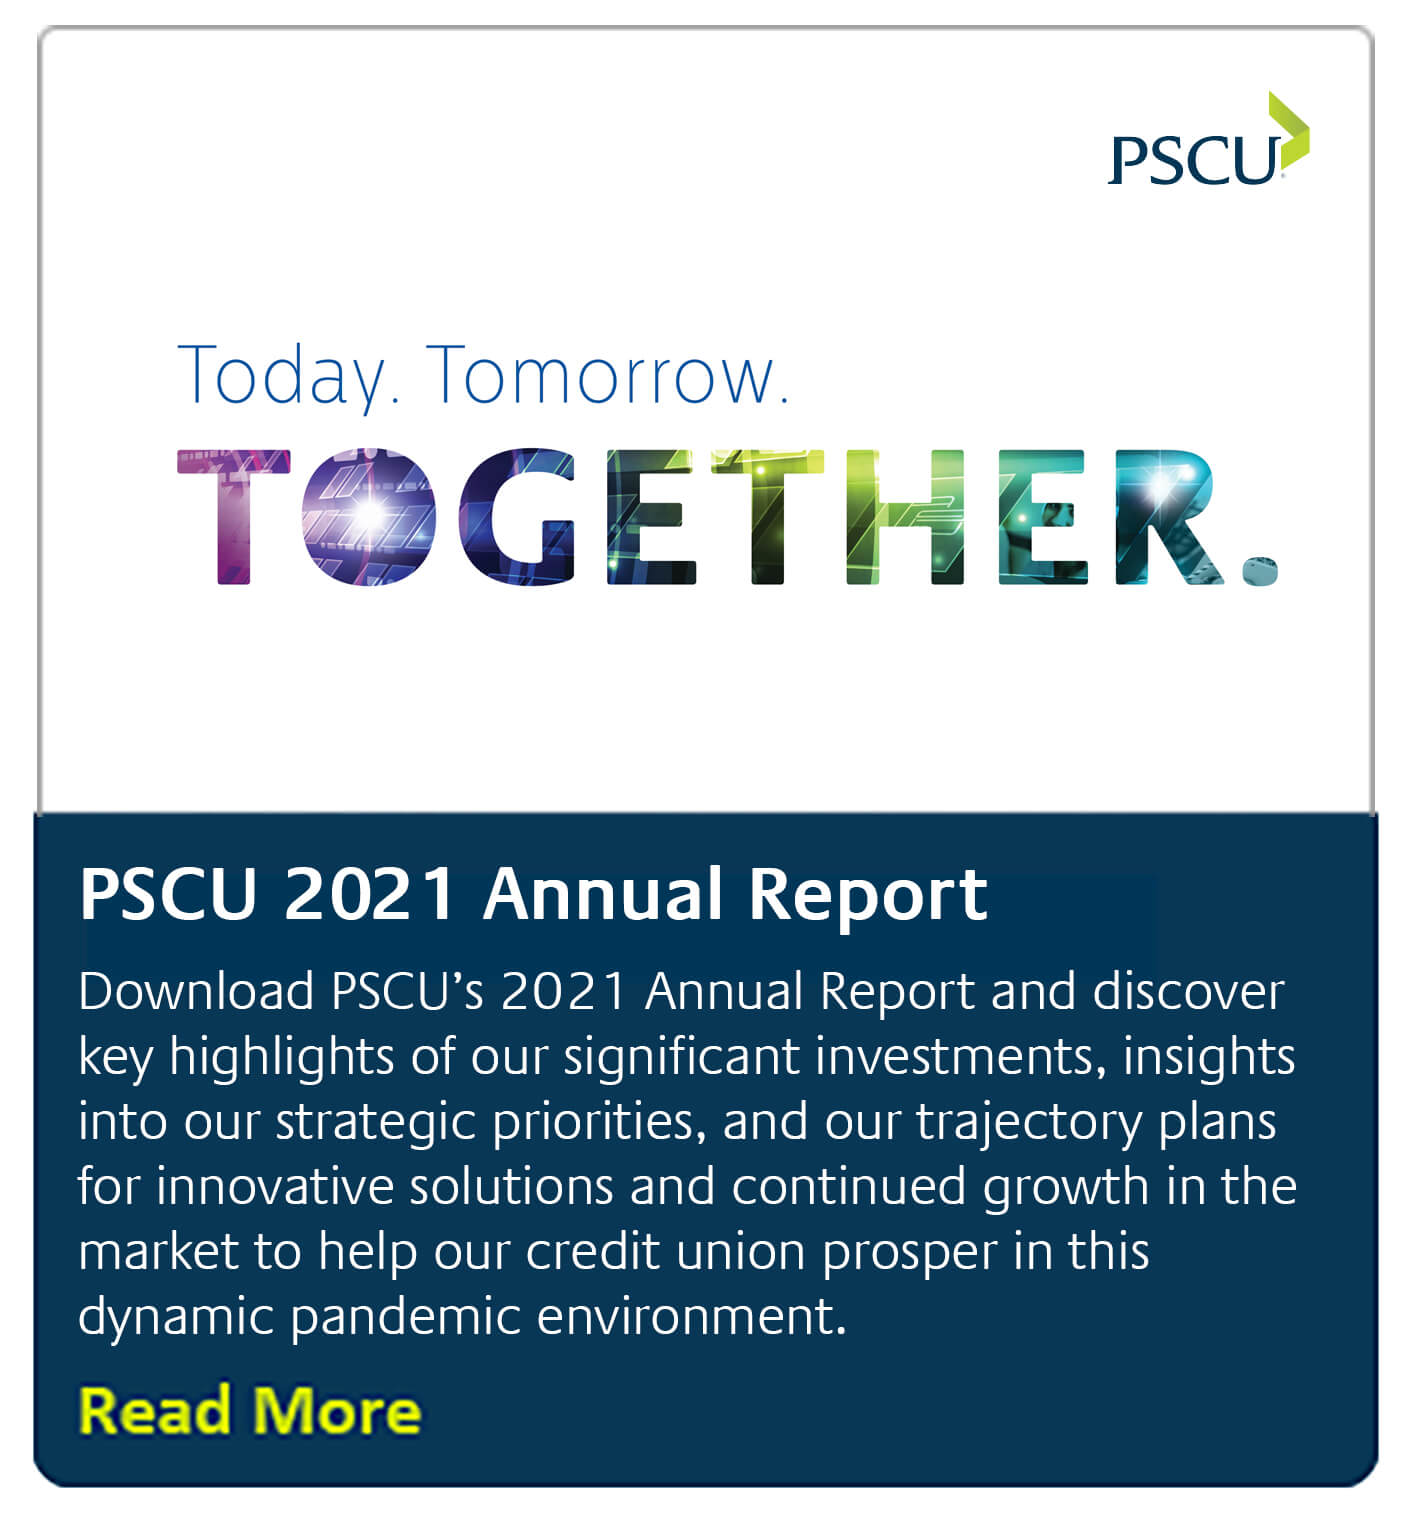 2021 PSCU Annual Report